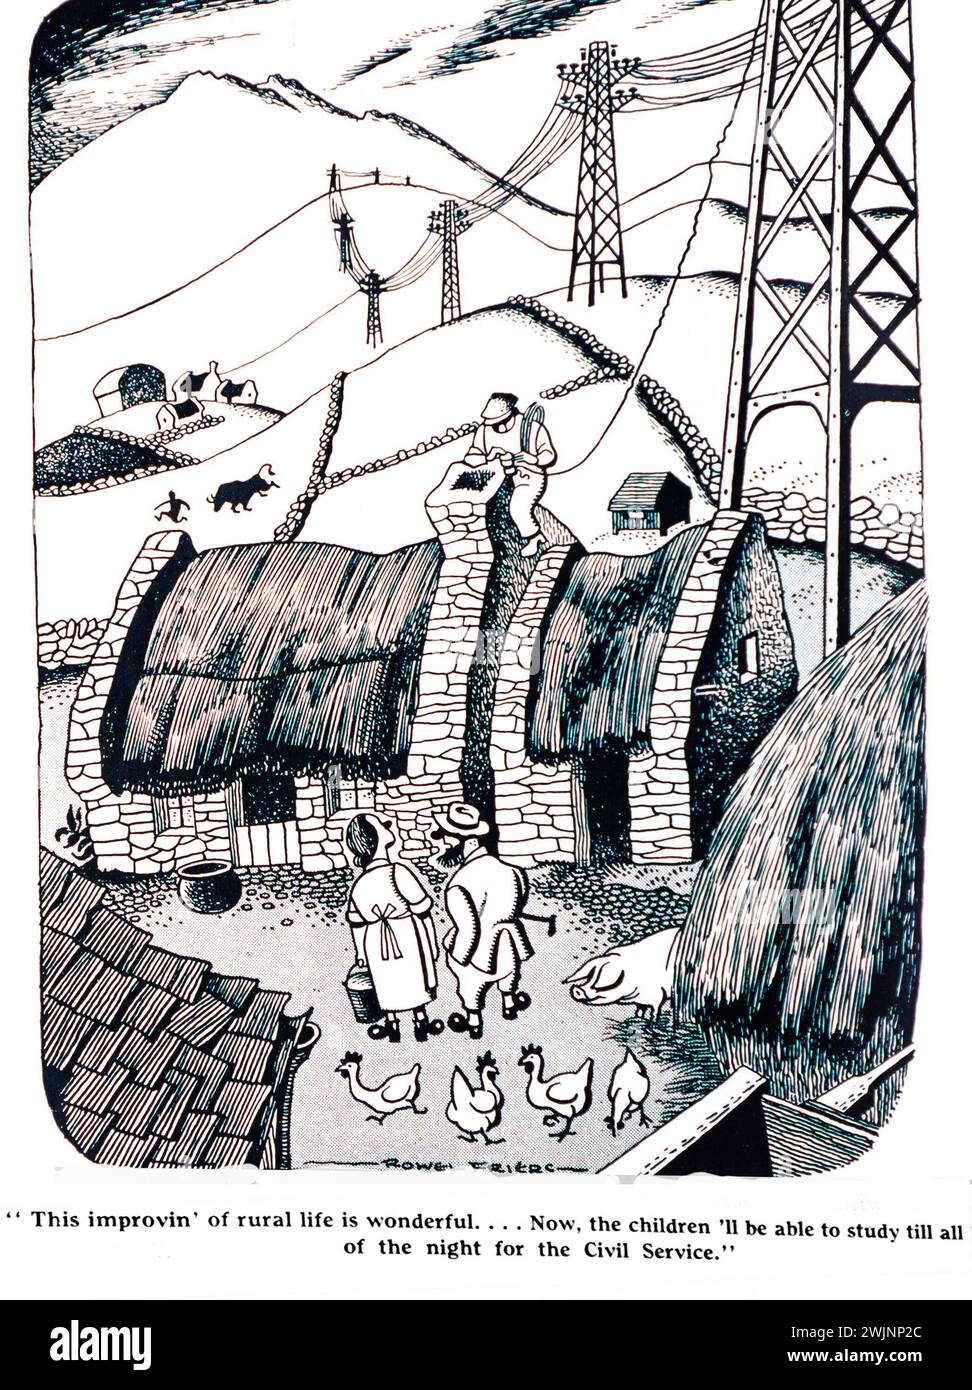 Ein Cartoon aus dem Dublin Opinion Magazine, in dem ein reetgedecktes Häuschen im Rahmen des ländlichen Elektrifizierungssystems in Irland an das Stromnetz angeschlossen wird. Der Cartoon zeigt zwei Leute, die die Verbesserungen begrüßen, damit die Kinder die ganze Nacht wach bleiben und für den öffentlichen Dienst lernen können. Stockfoto